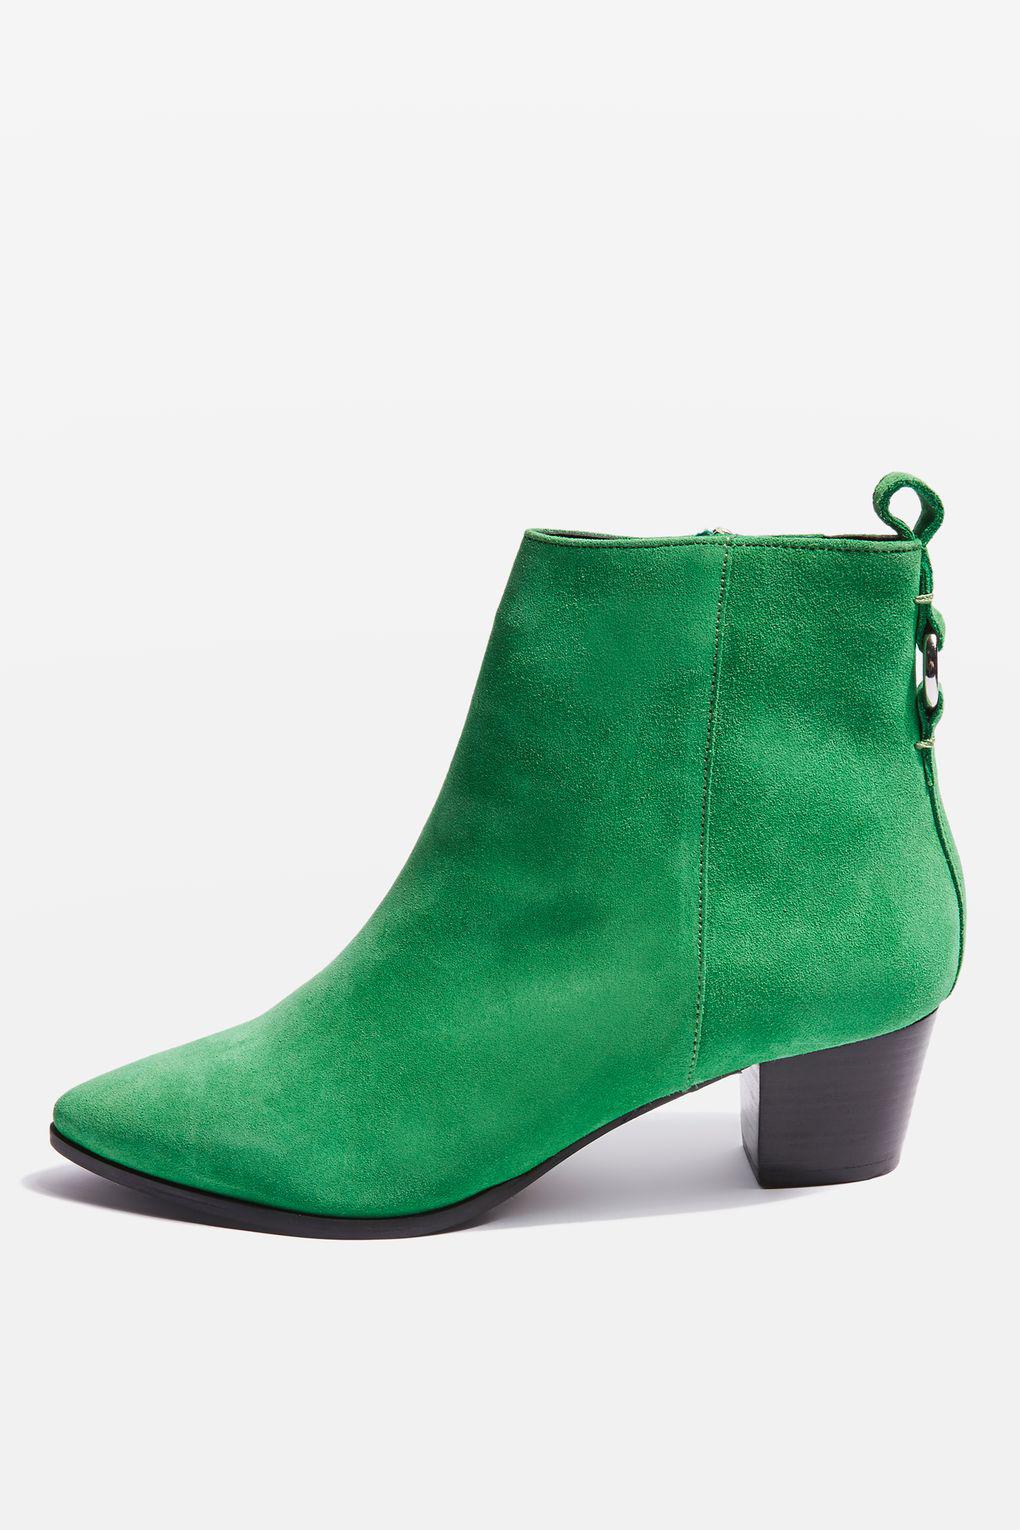 topshop green boots